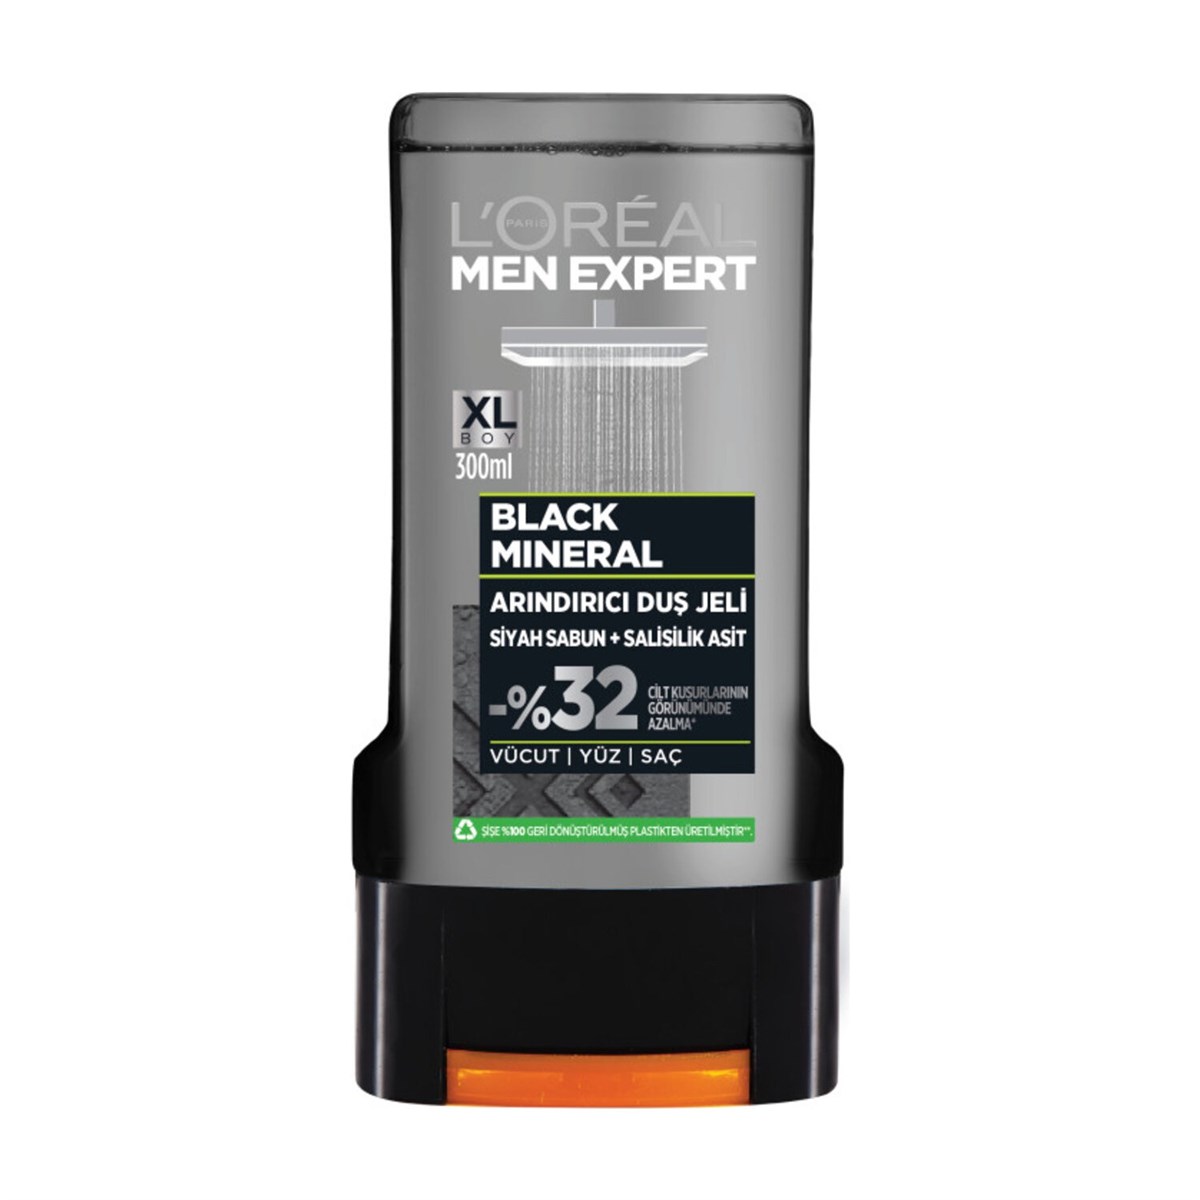 L'Oreal Men Expert Black Mineral Shower Gel 300 ml-LeylekKapida.com